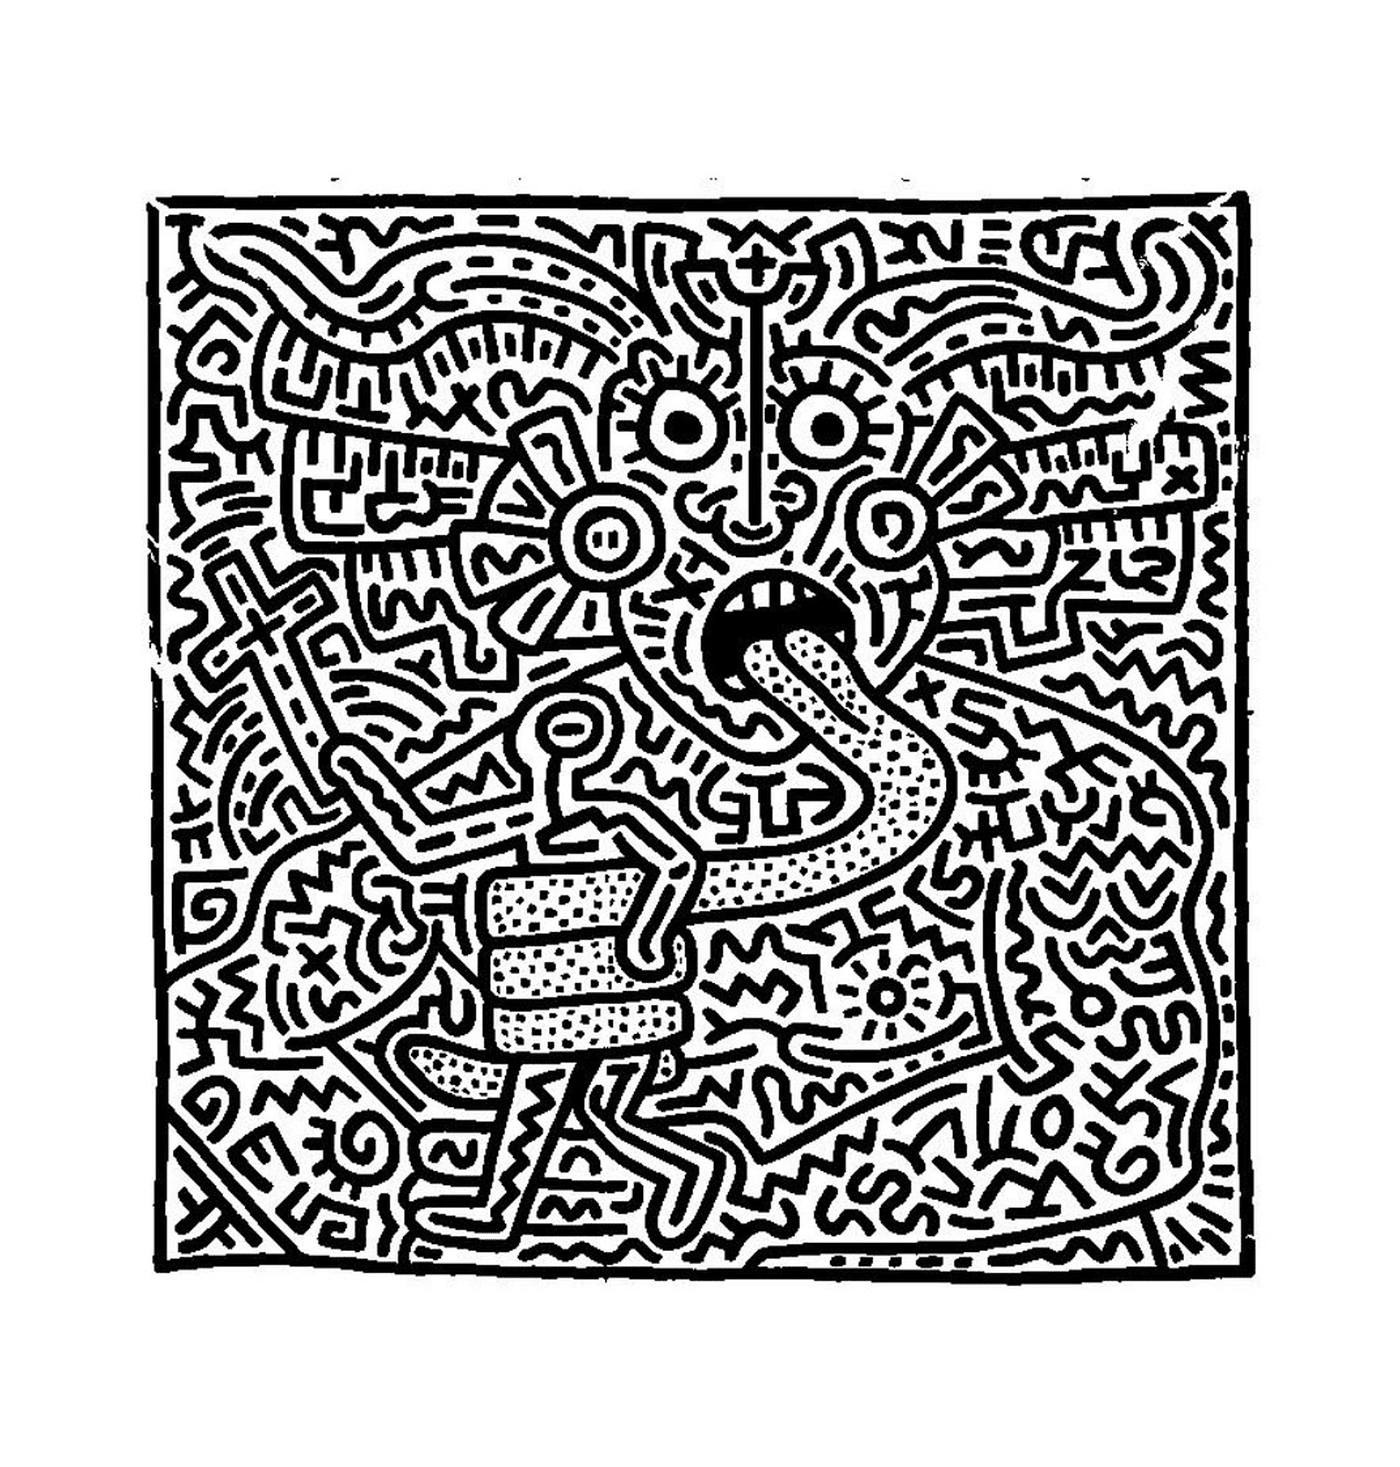  das Gesicht eines Mannes nach Keith Haring 